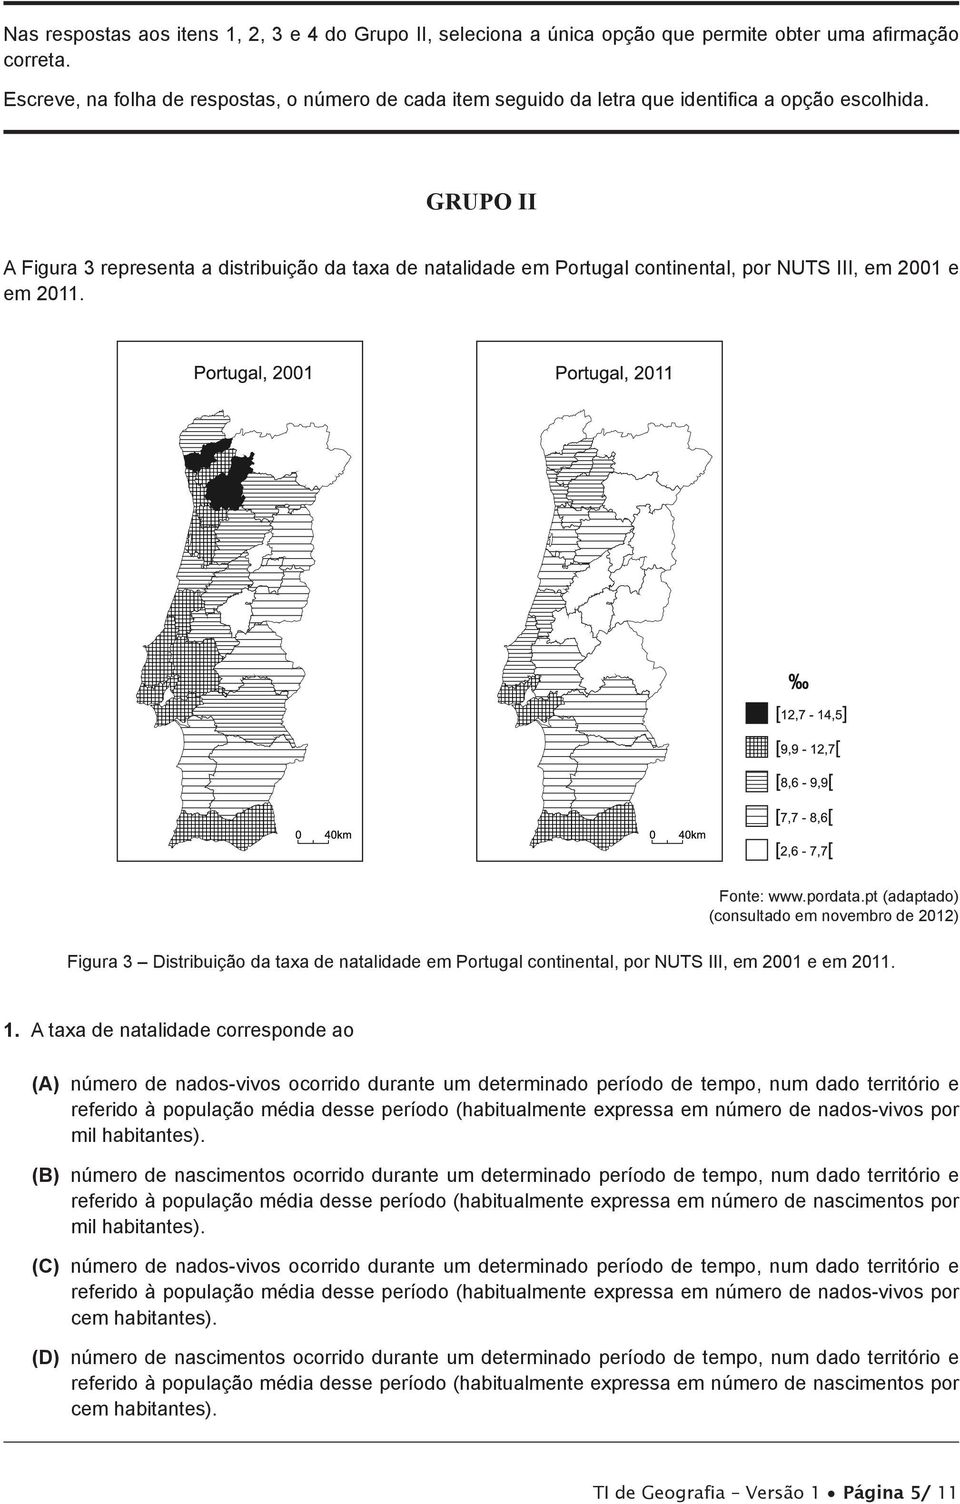 GRUPO II A Figura 3 representa a distribuição da taxa de natalidade em Portugal continental, por NUTS III, em 2001 e em 2011. Fonte: www.pordata.